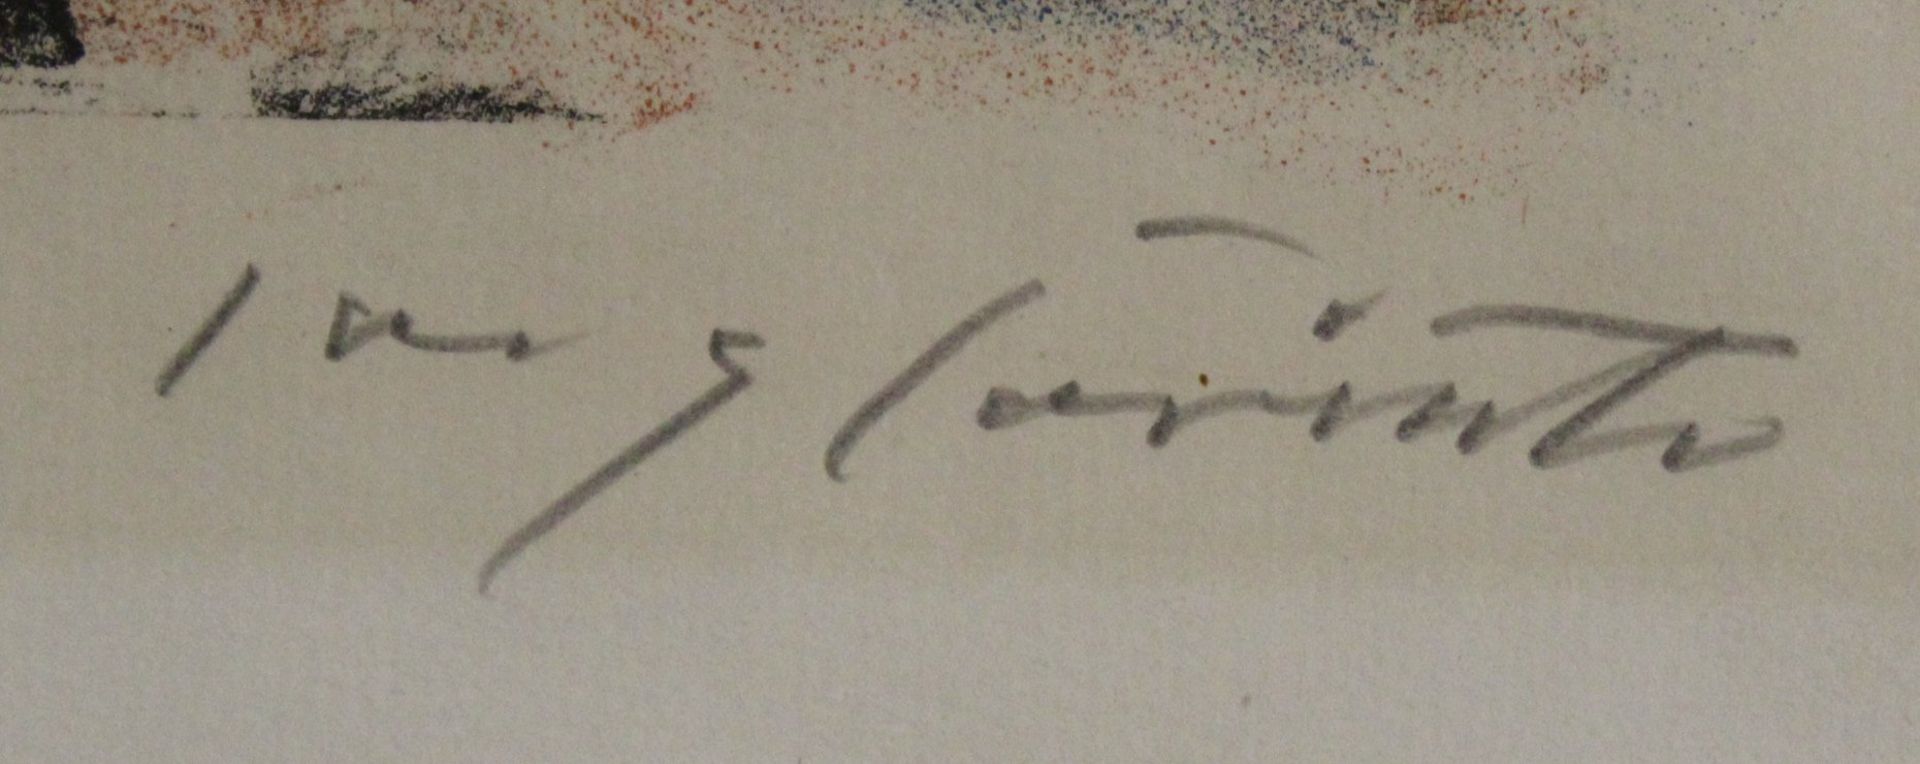 Lovis CORINTH (1858-1925), Der Schwur auf dem Rütli, Farblitho, gut gerahmt/Glas, RG 62 x 53,5cm. - Bild 3 aus 4